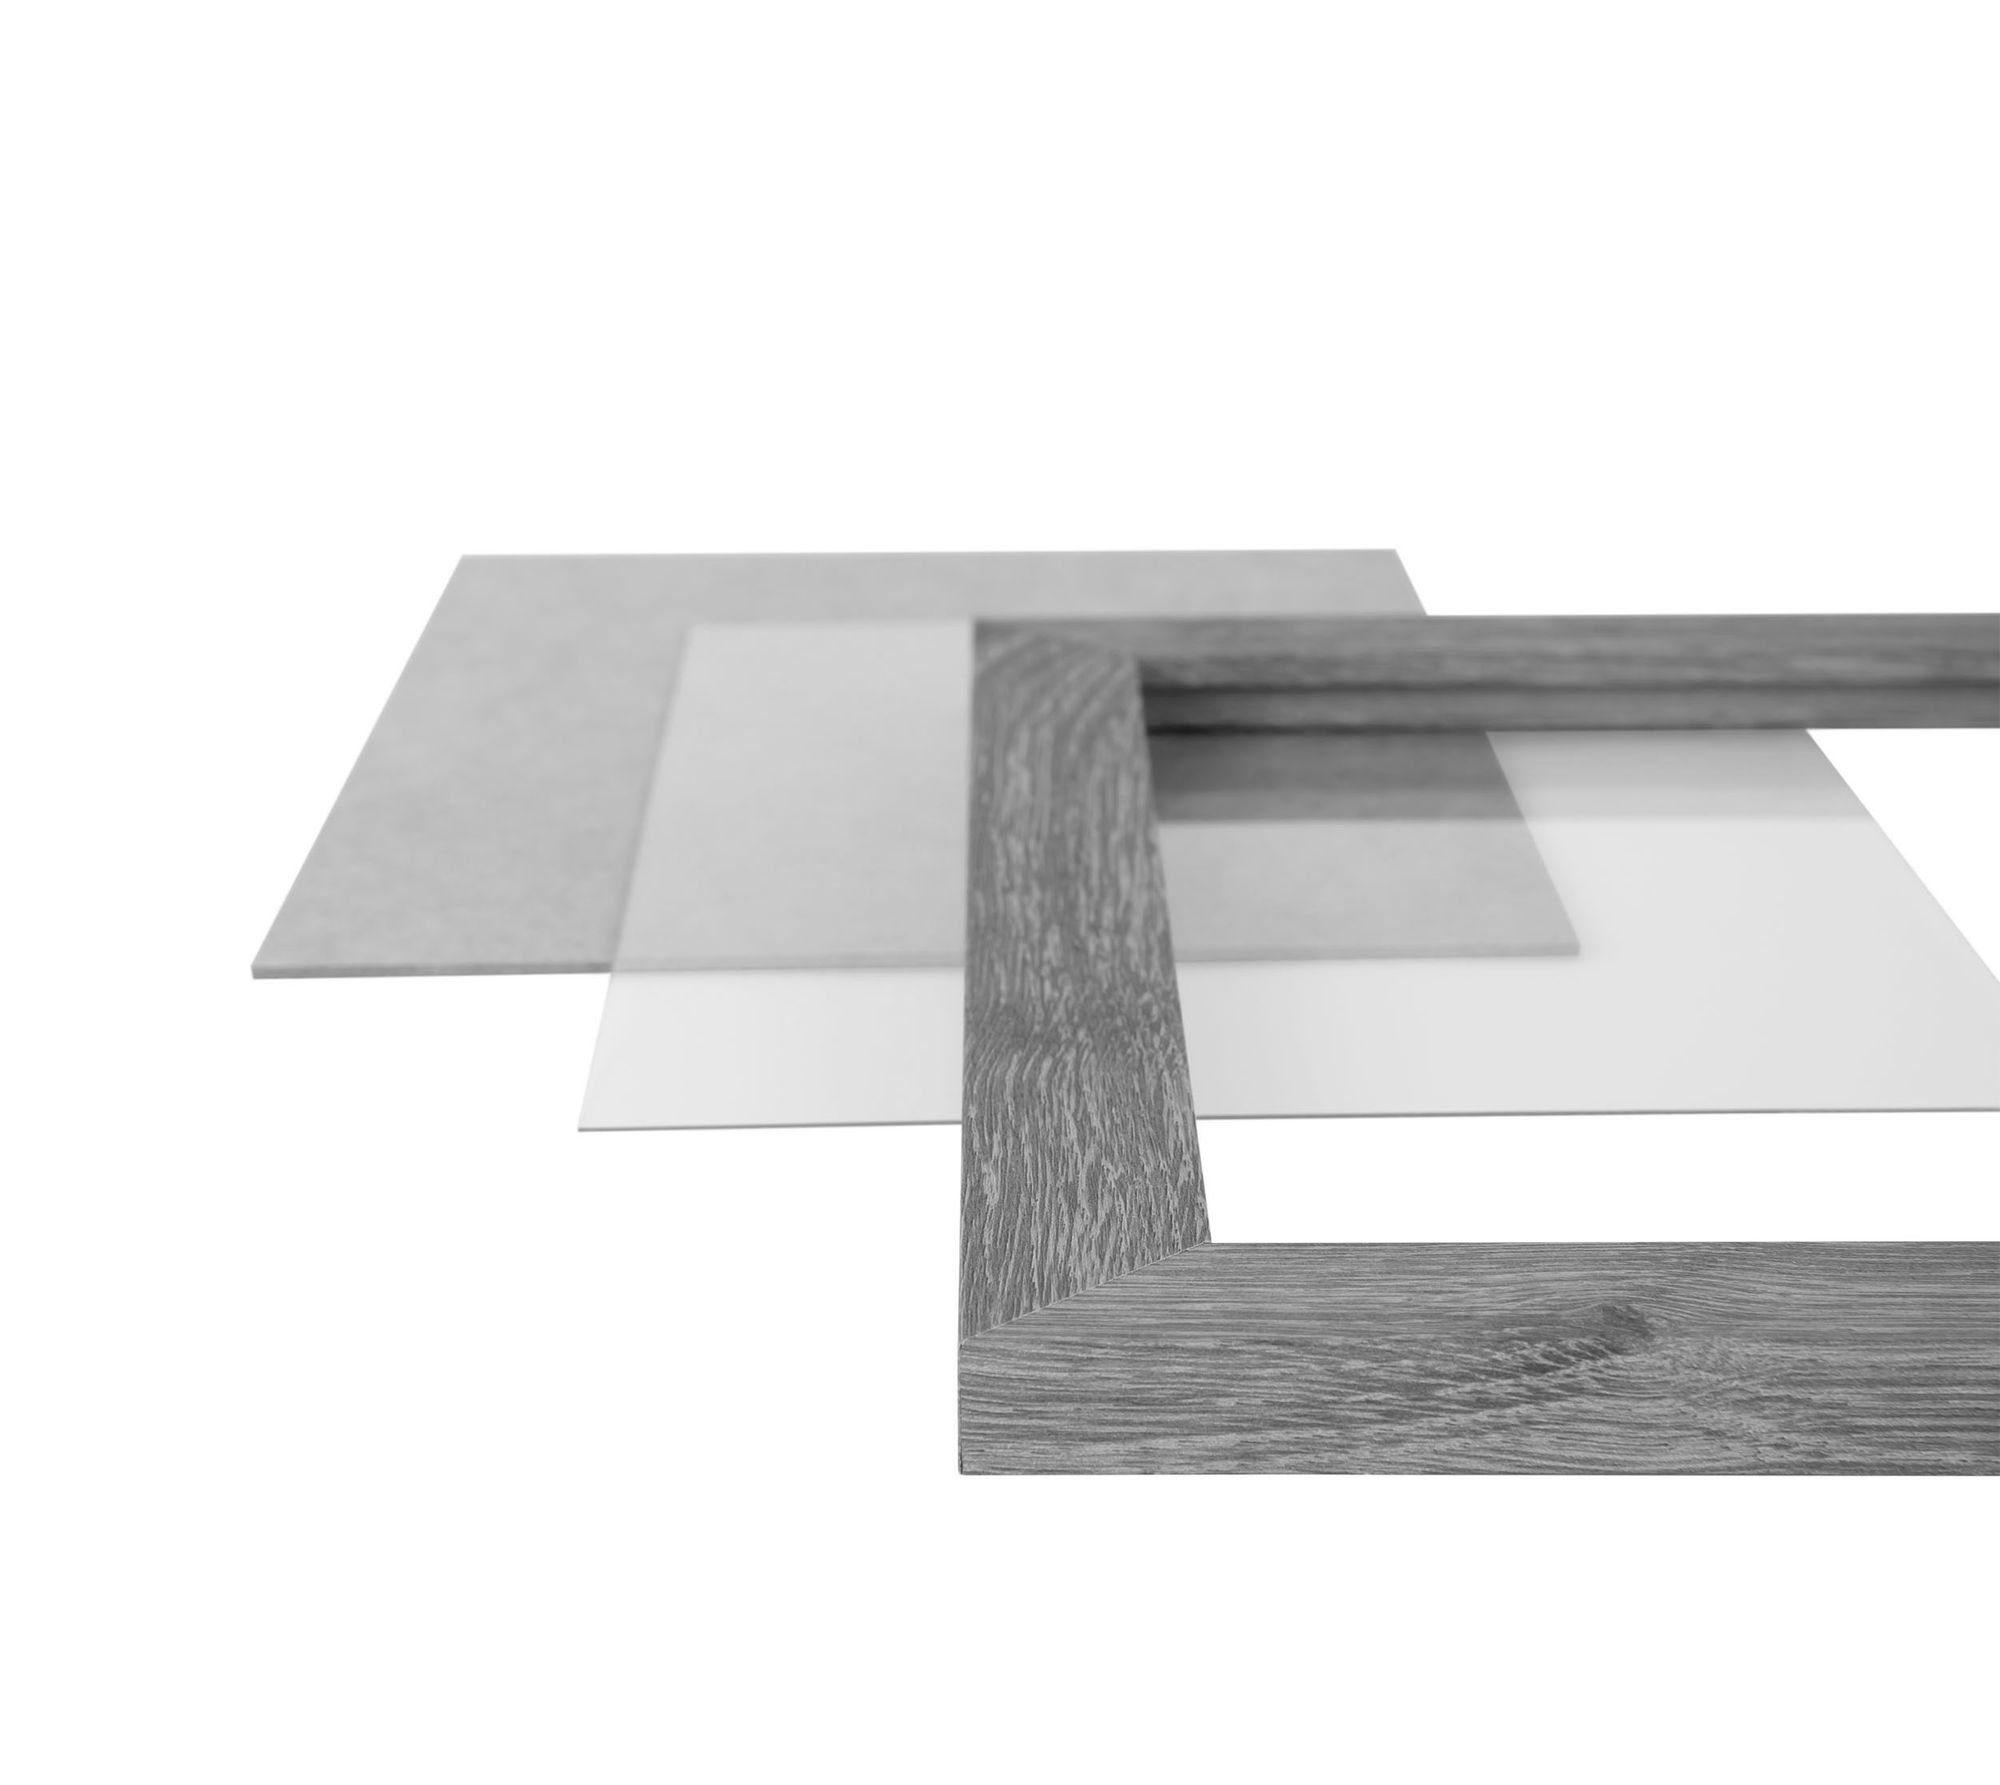 CLAMARO 'Collage' Clamaro stahlgrau Acrylglas, Bilderrahmen DIN Aufhänger MDF inkl. FSC® Rückwand Holz und Rahmen, Rahmen